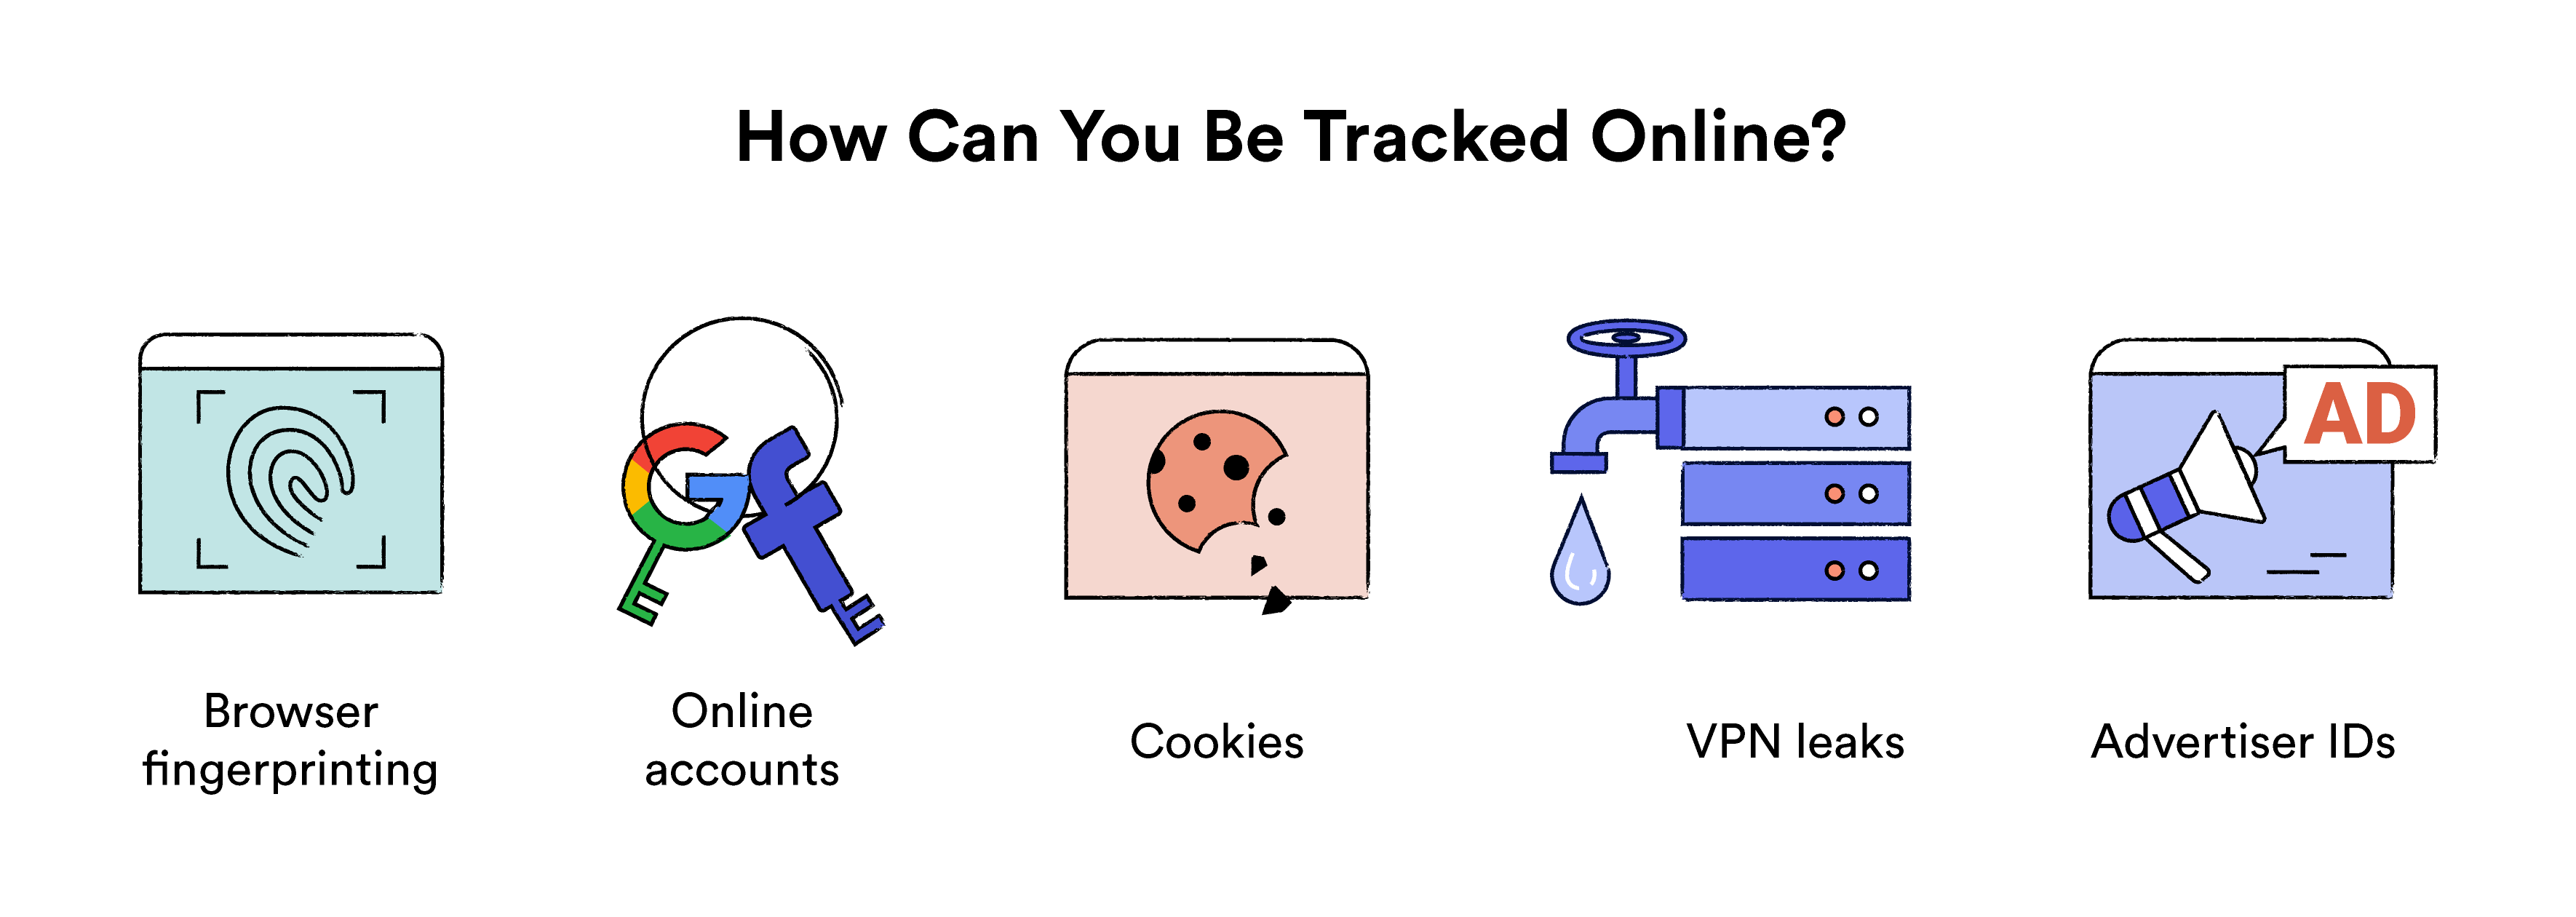 Ilustración que muestra cómo puede ser rastreado en línea.